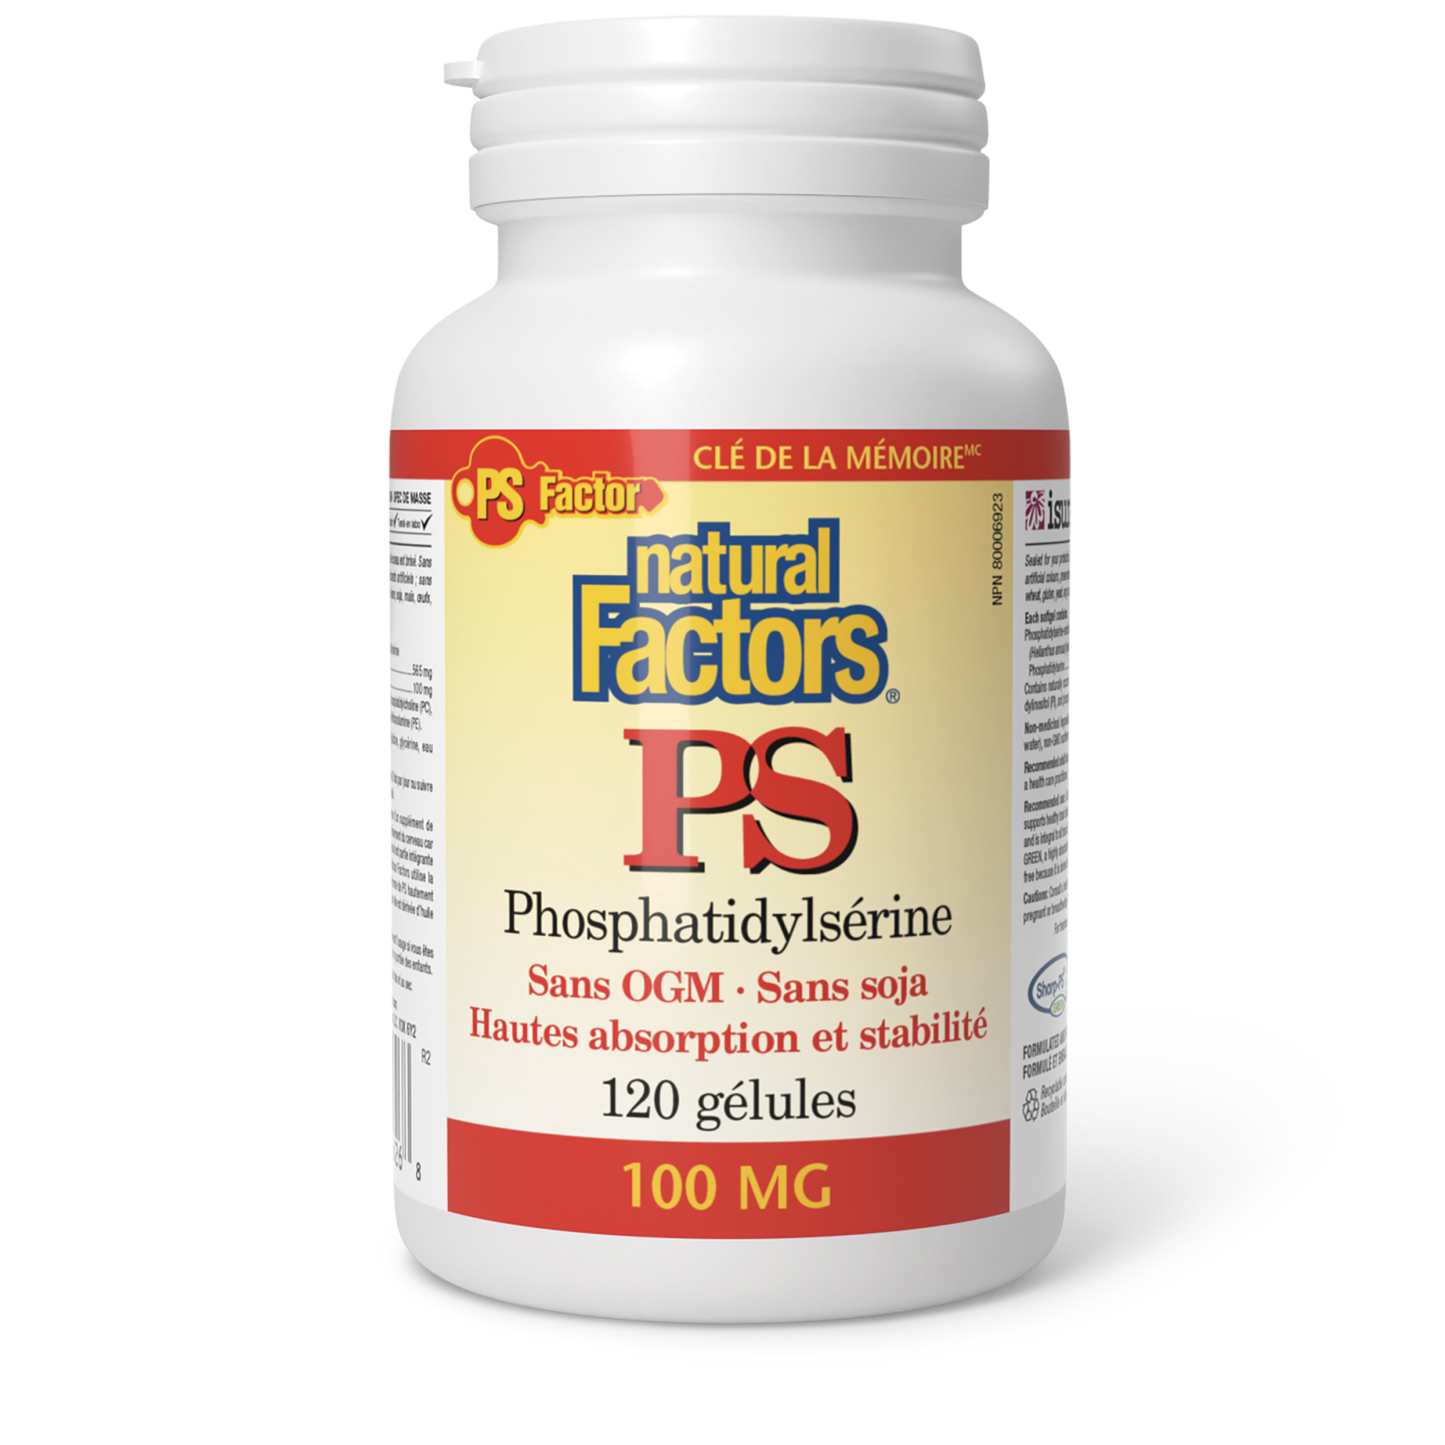 PS Phosphatidylsérine 100 mg, Natural Factors|v|image|2626